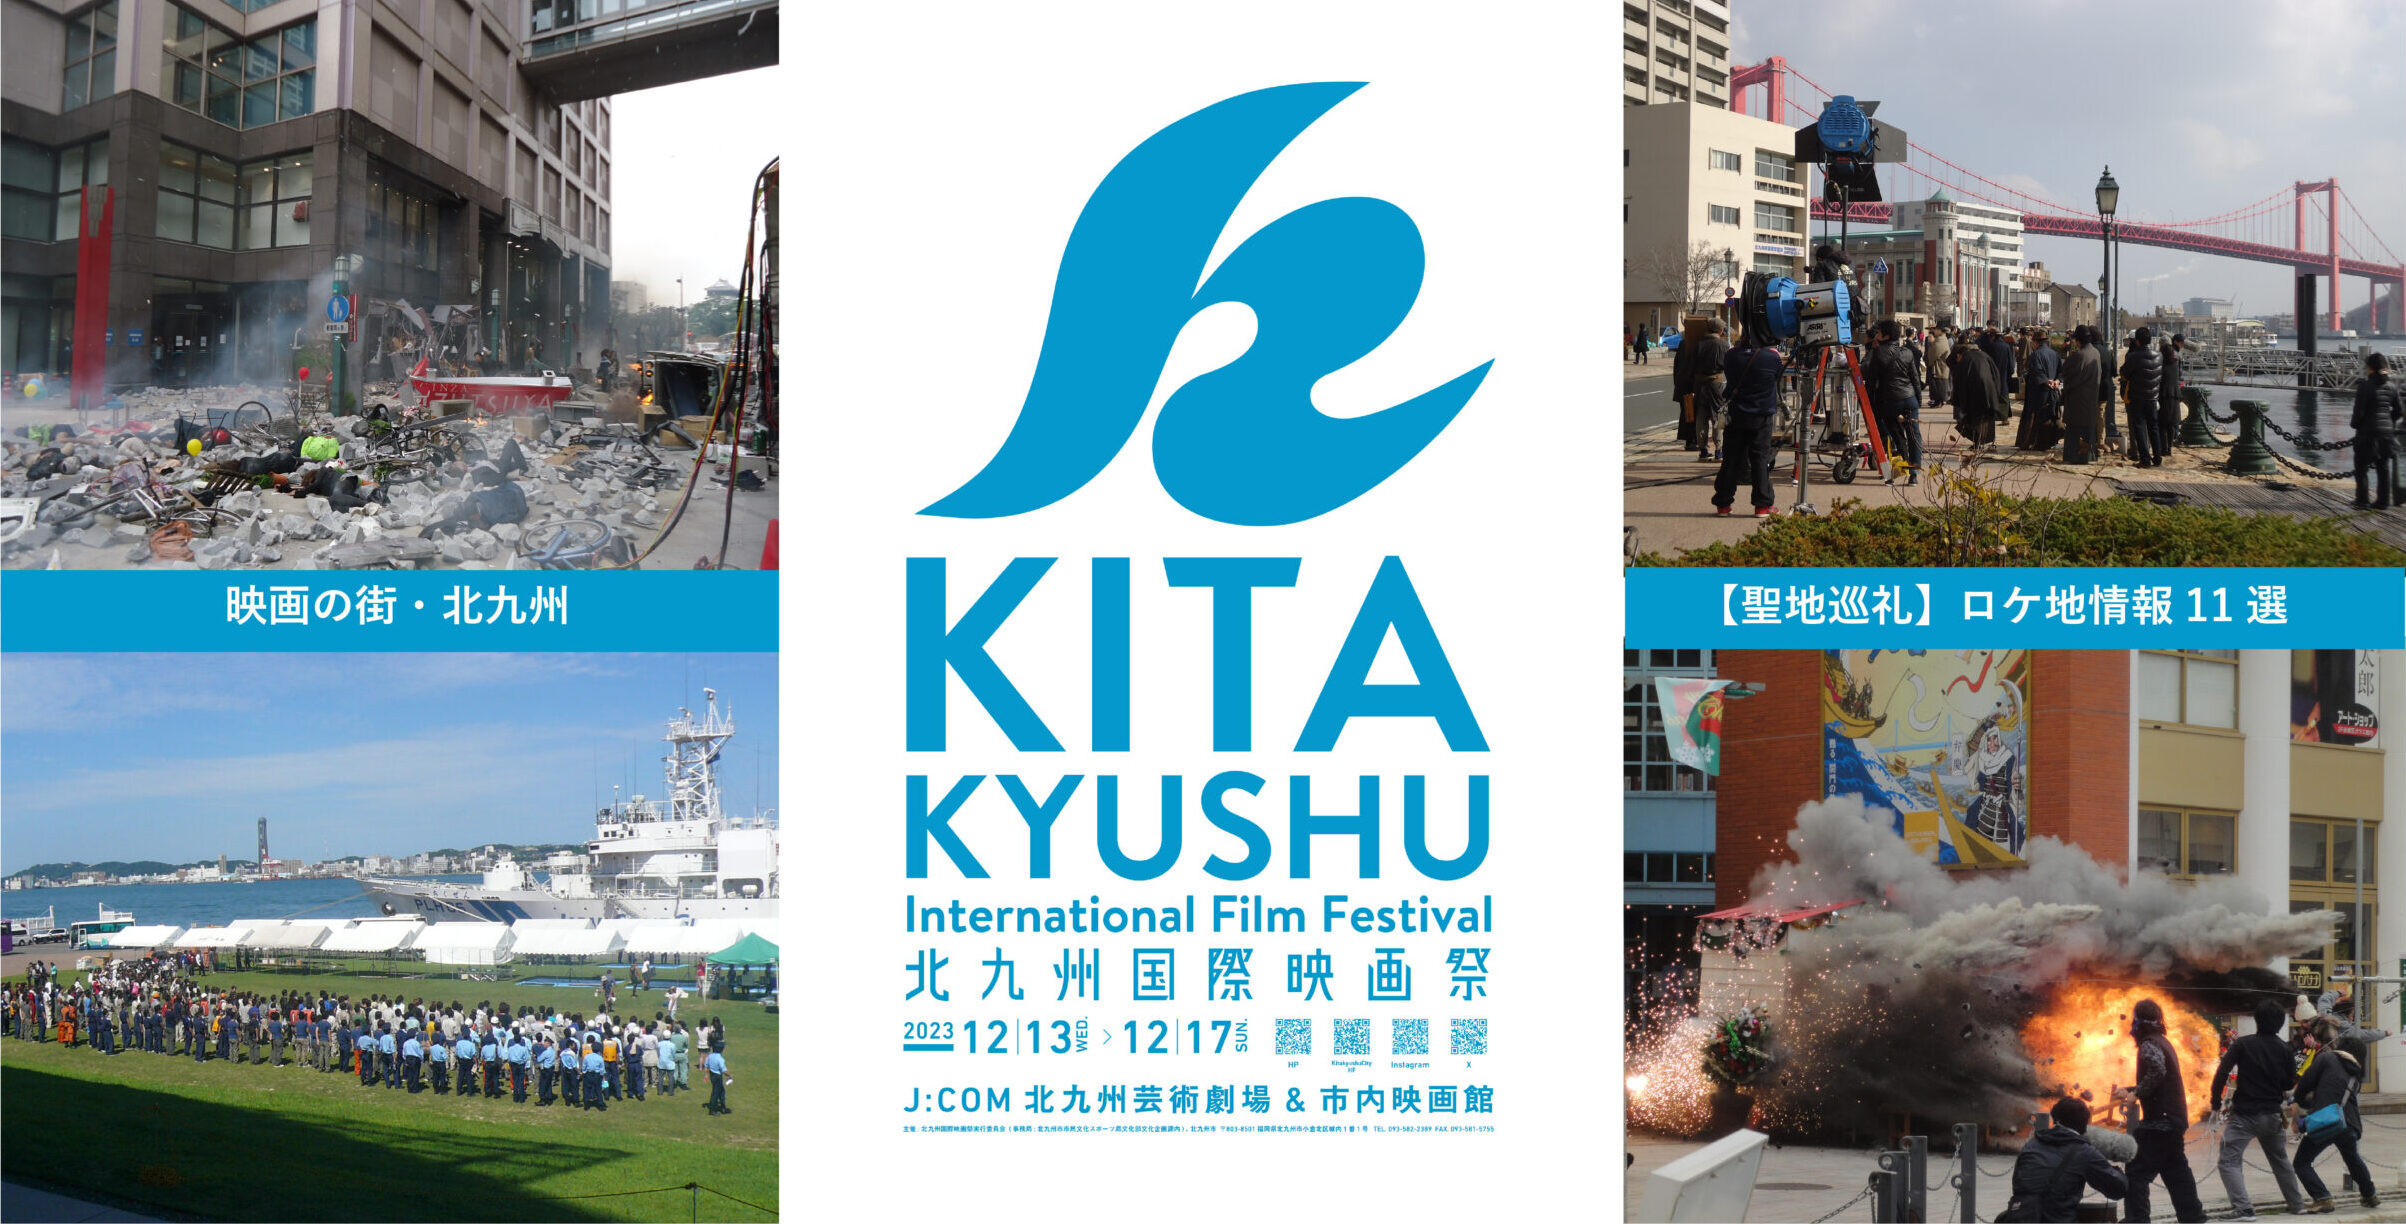 【特集】「北九州国際映画祭」情報、ロケ地巡りなど〝映画の街・北九州〟をご紹介